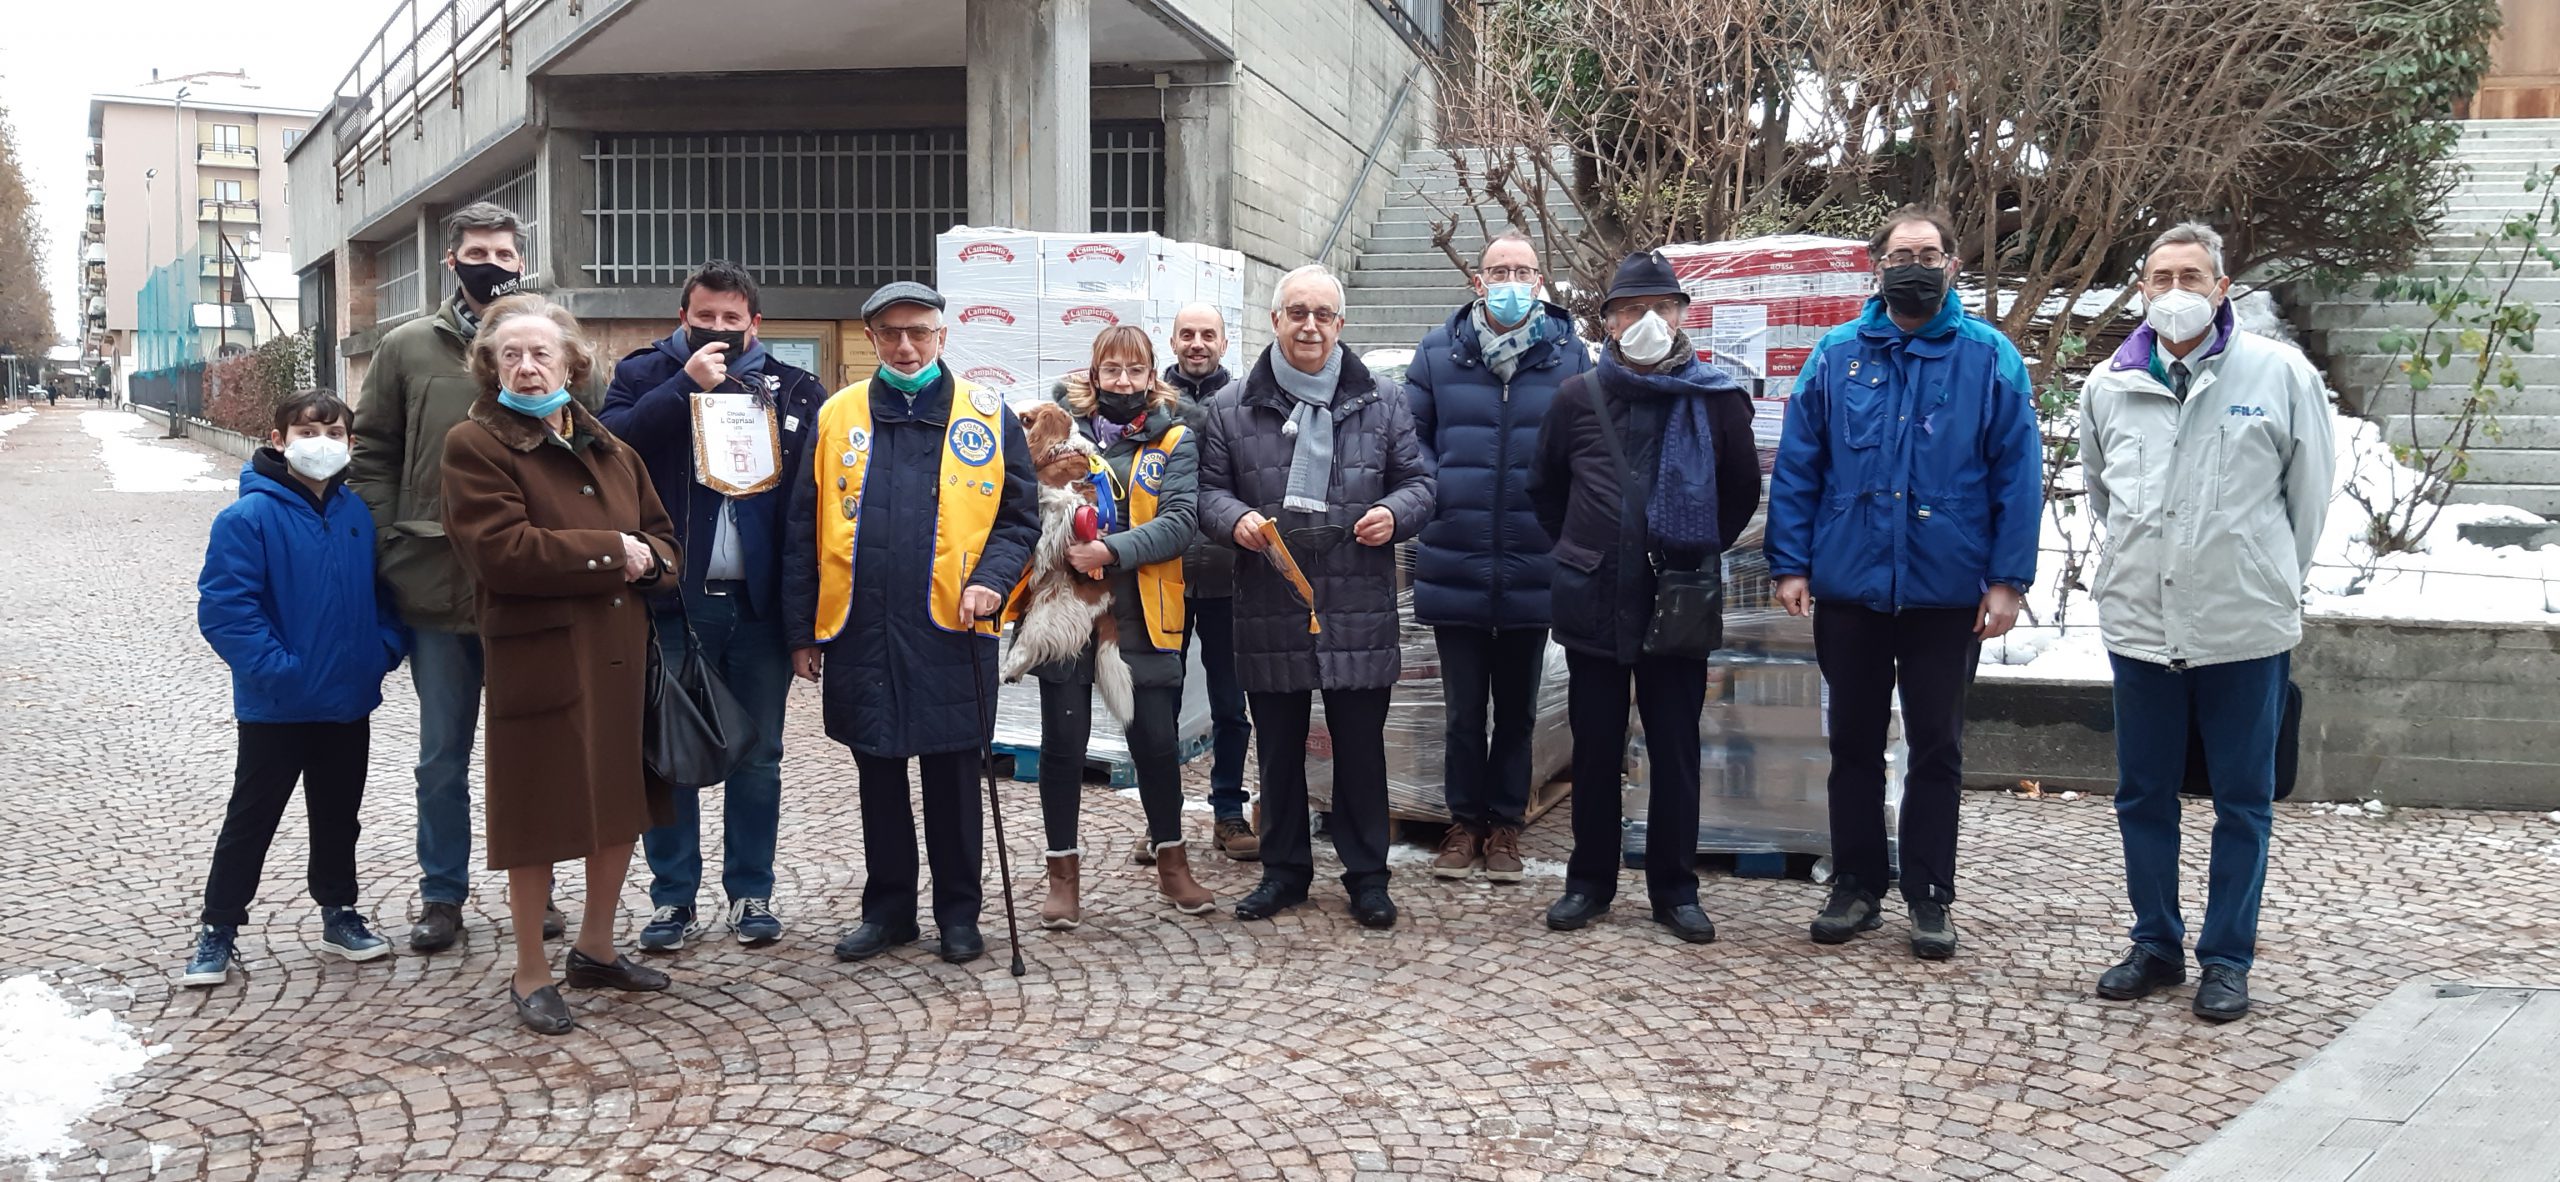 Cuneo Cuore Immacolato donazione Lions Caprissi 10 dicembre 2021 foto 1 mar.t